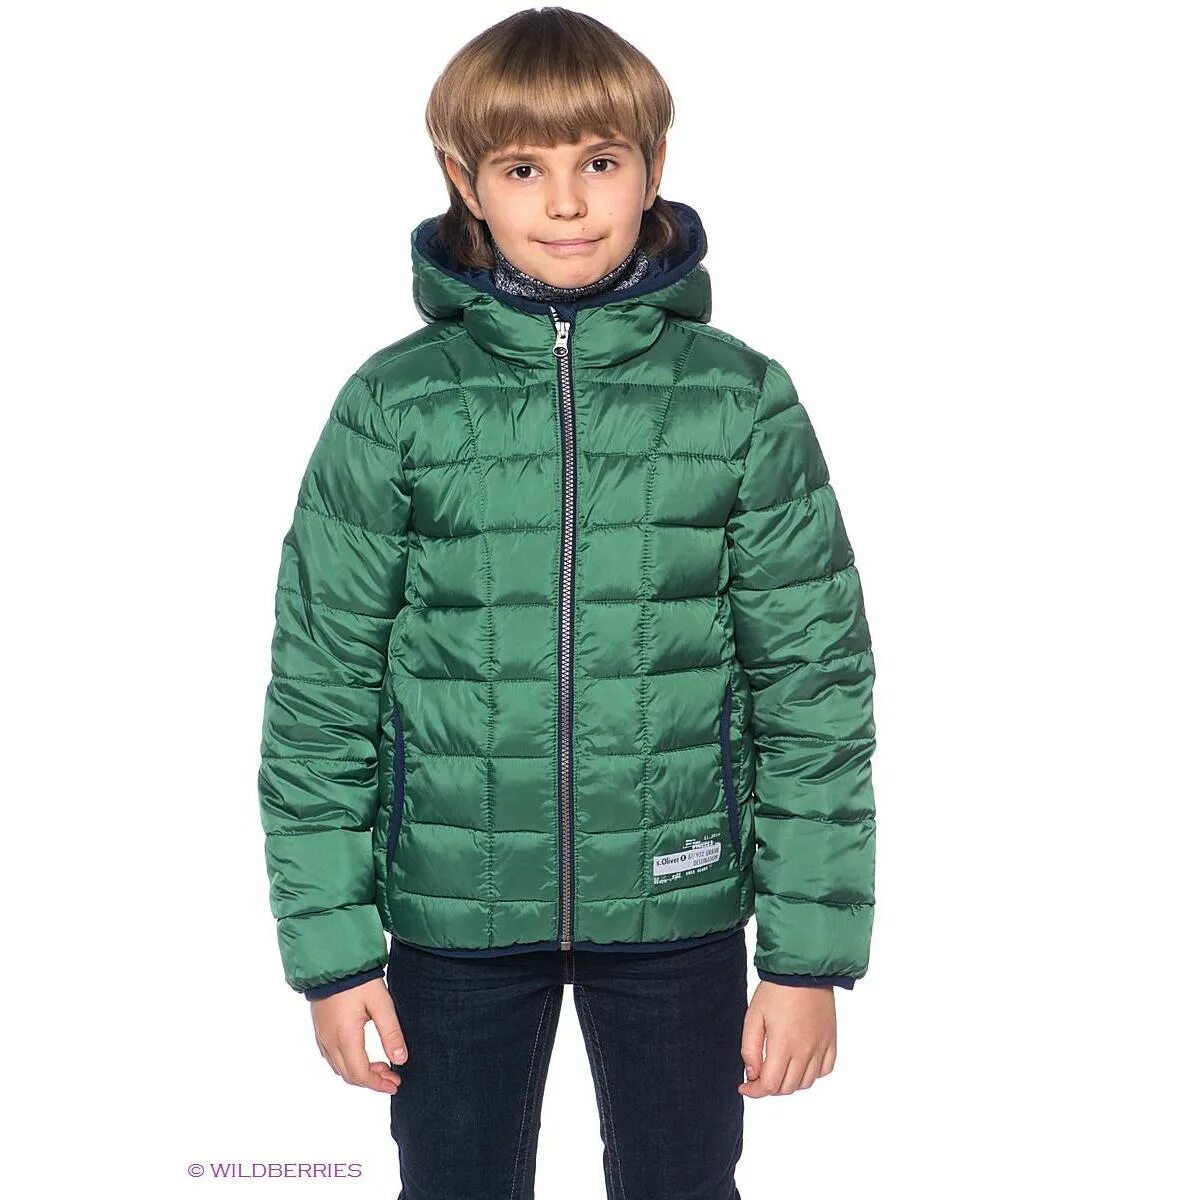 Зеленая куртка для мальчика. Салатовая куртка для мальчика. Зимняя куртка зеленая на мальчика. Куртка зеленая на мальчика 140. Зеленые куртки для мальчика